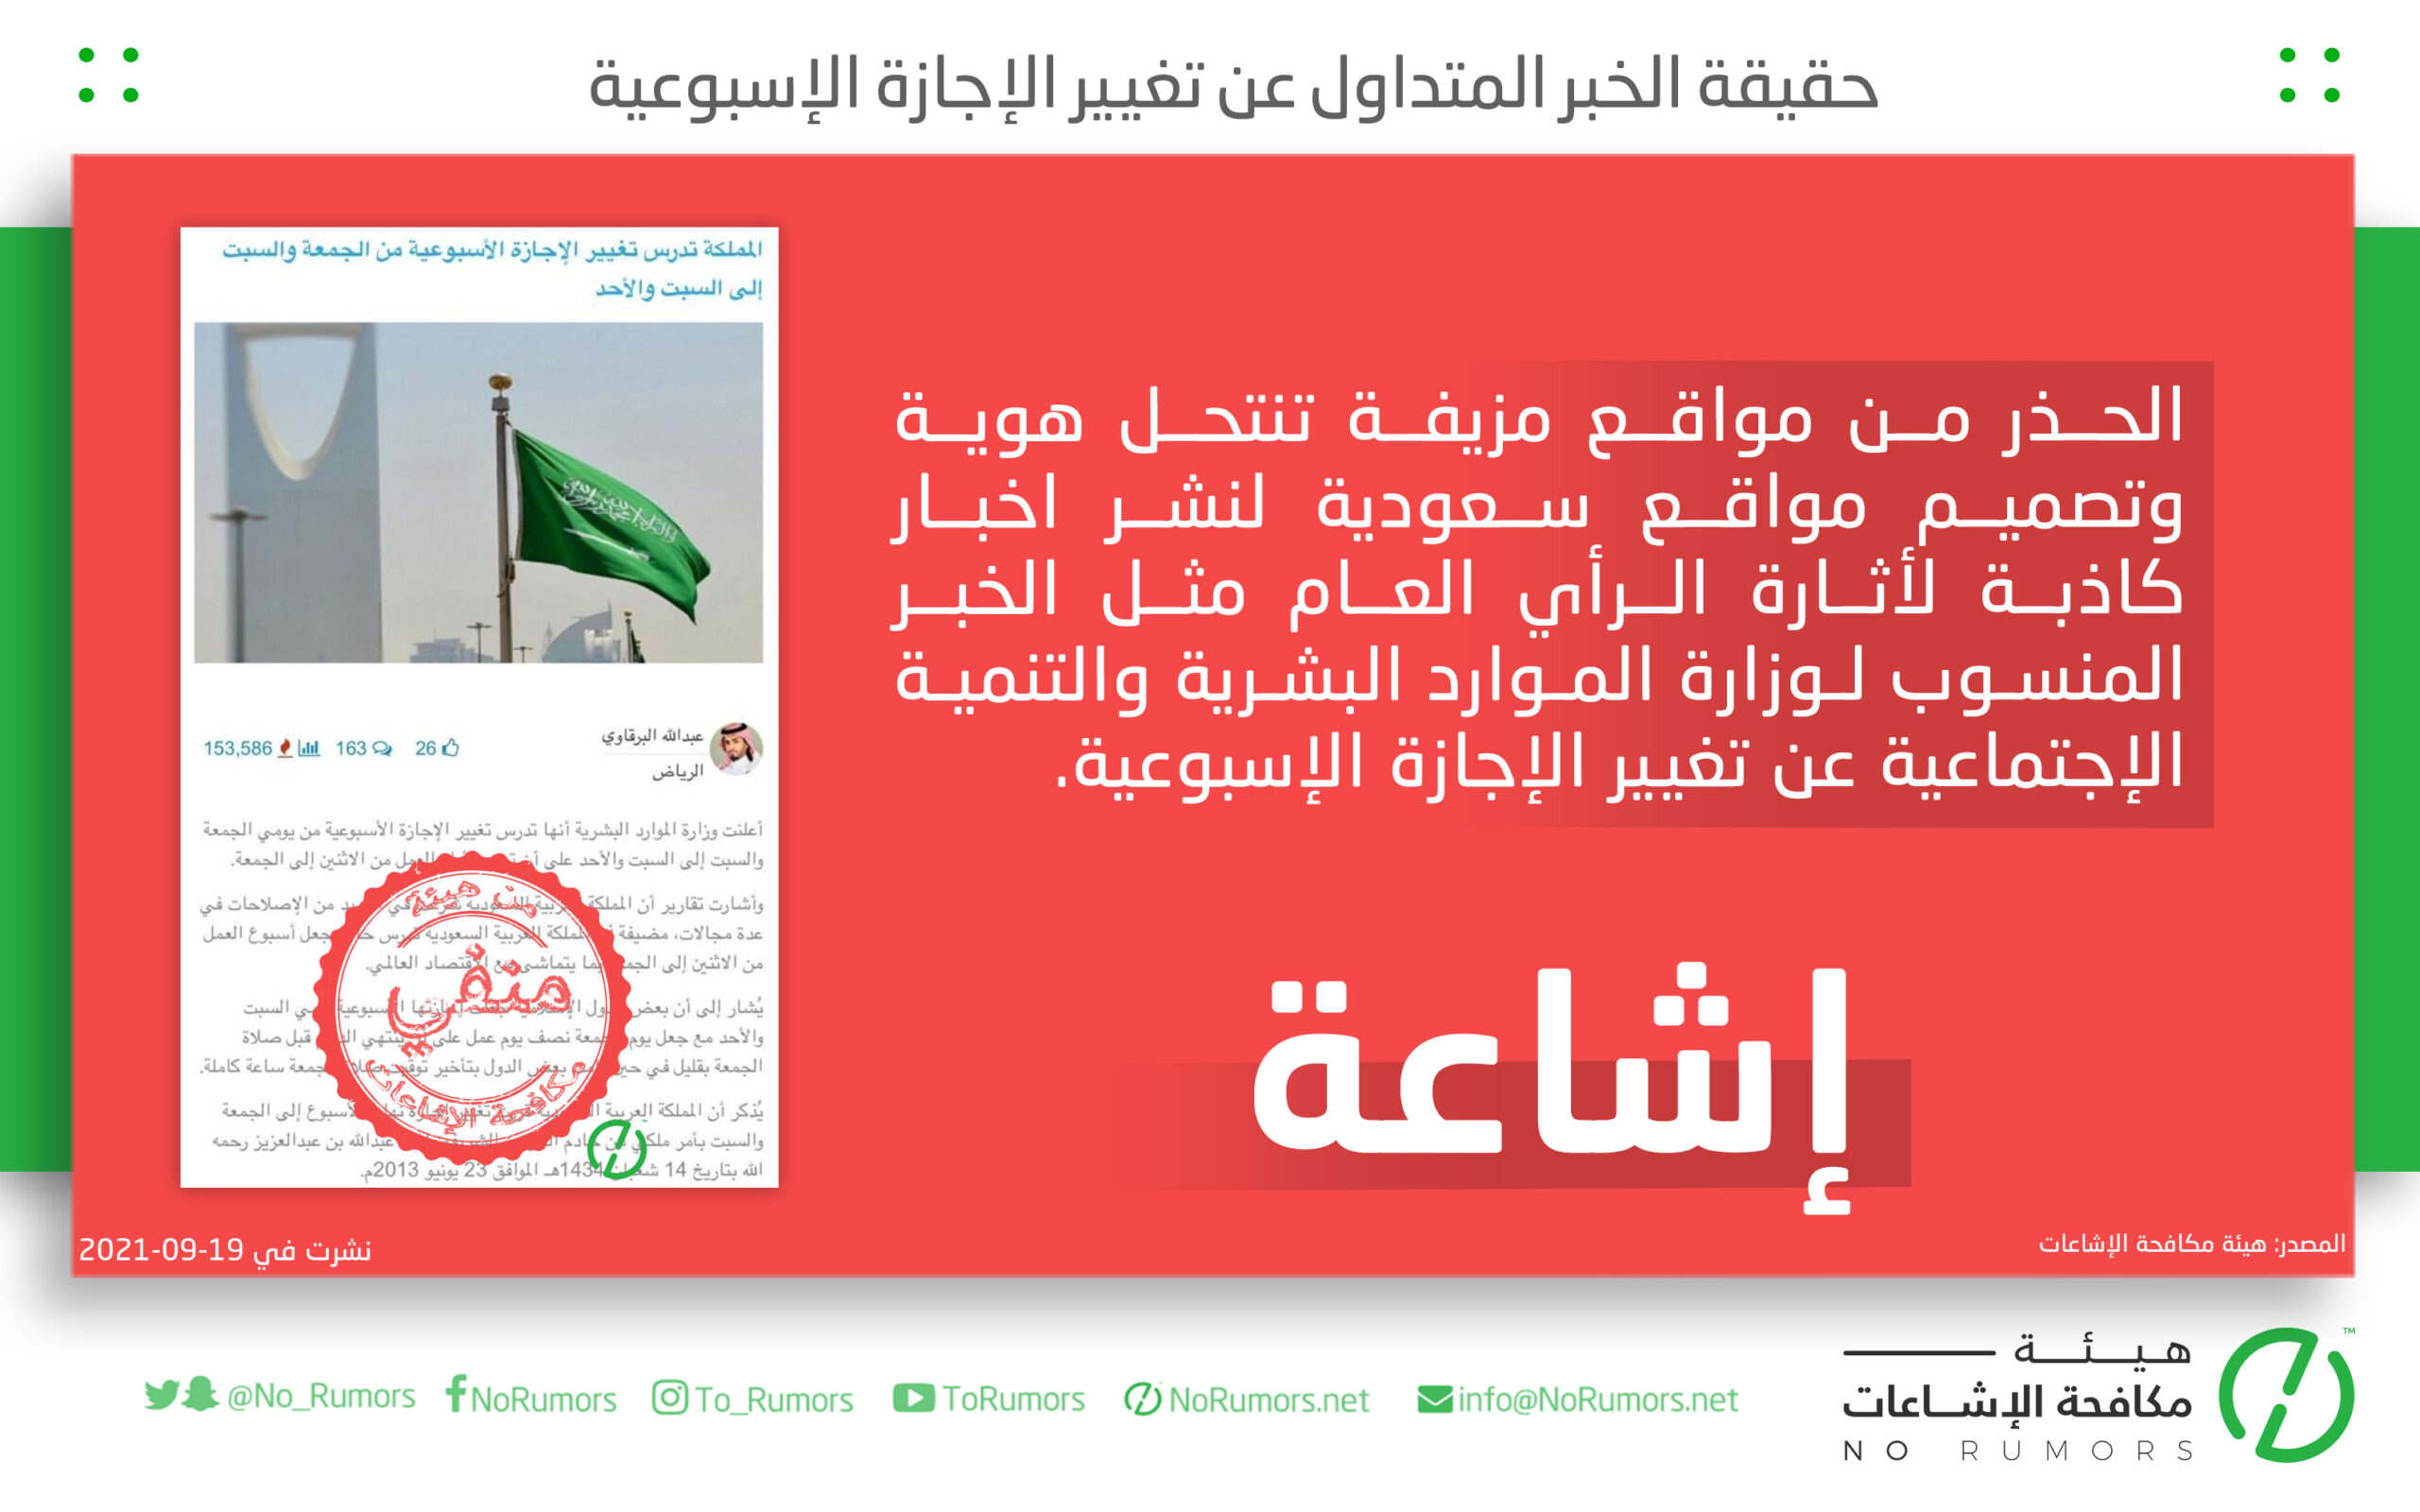 حقيقة مواقع مزيفة تنتحل هوية وتصميم مواقع سعودية لنشر اخبار كاذبة لأثارة الرأي العام